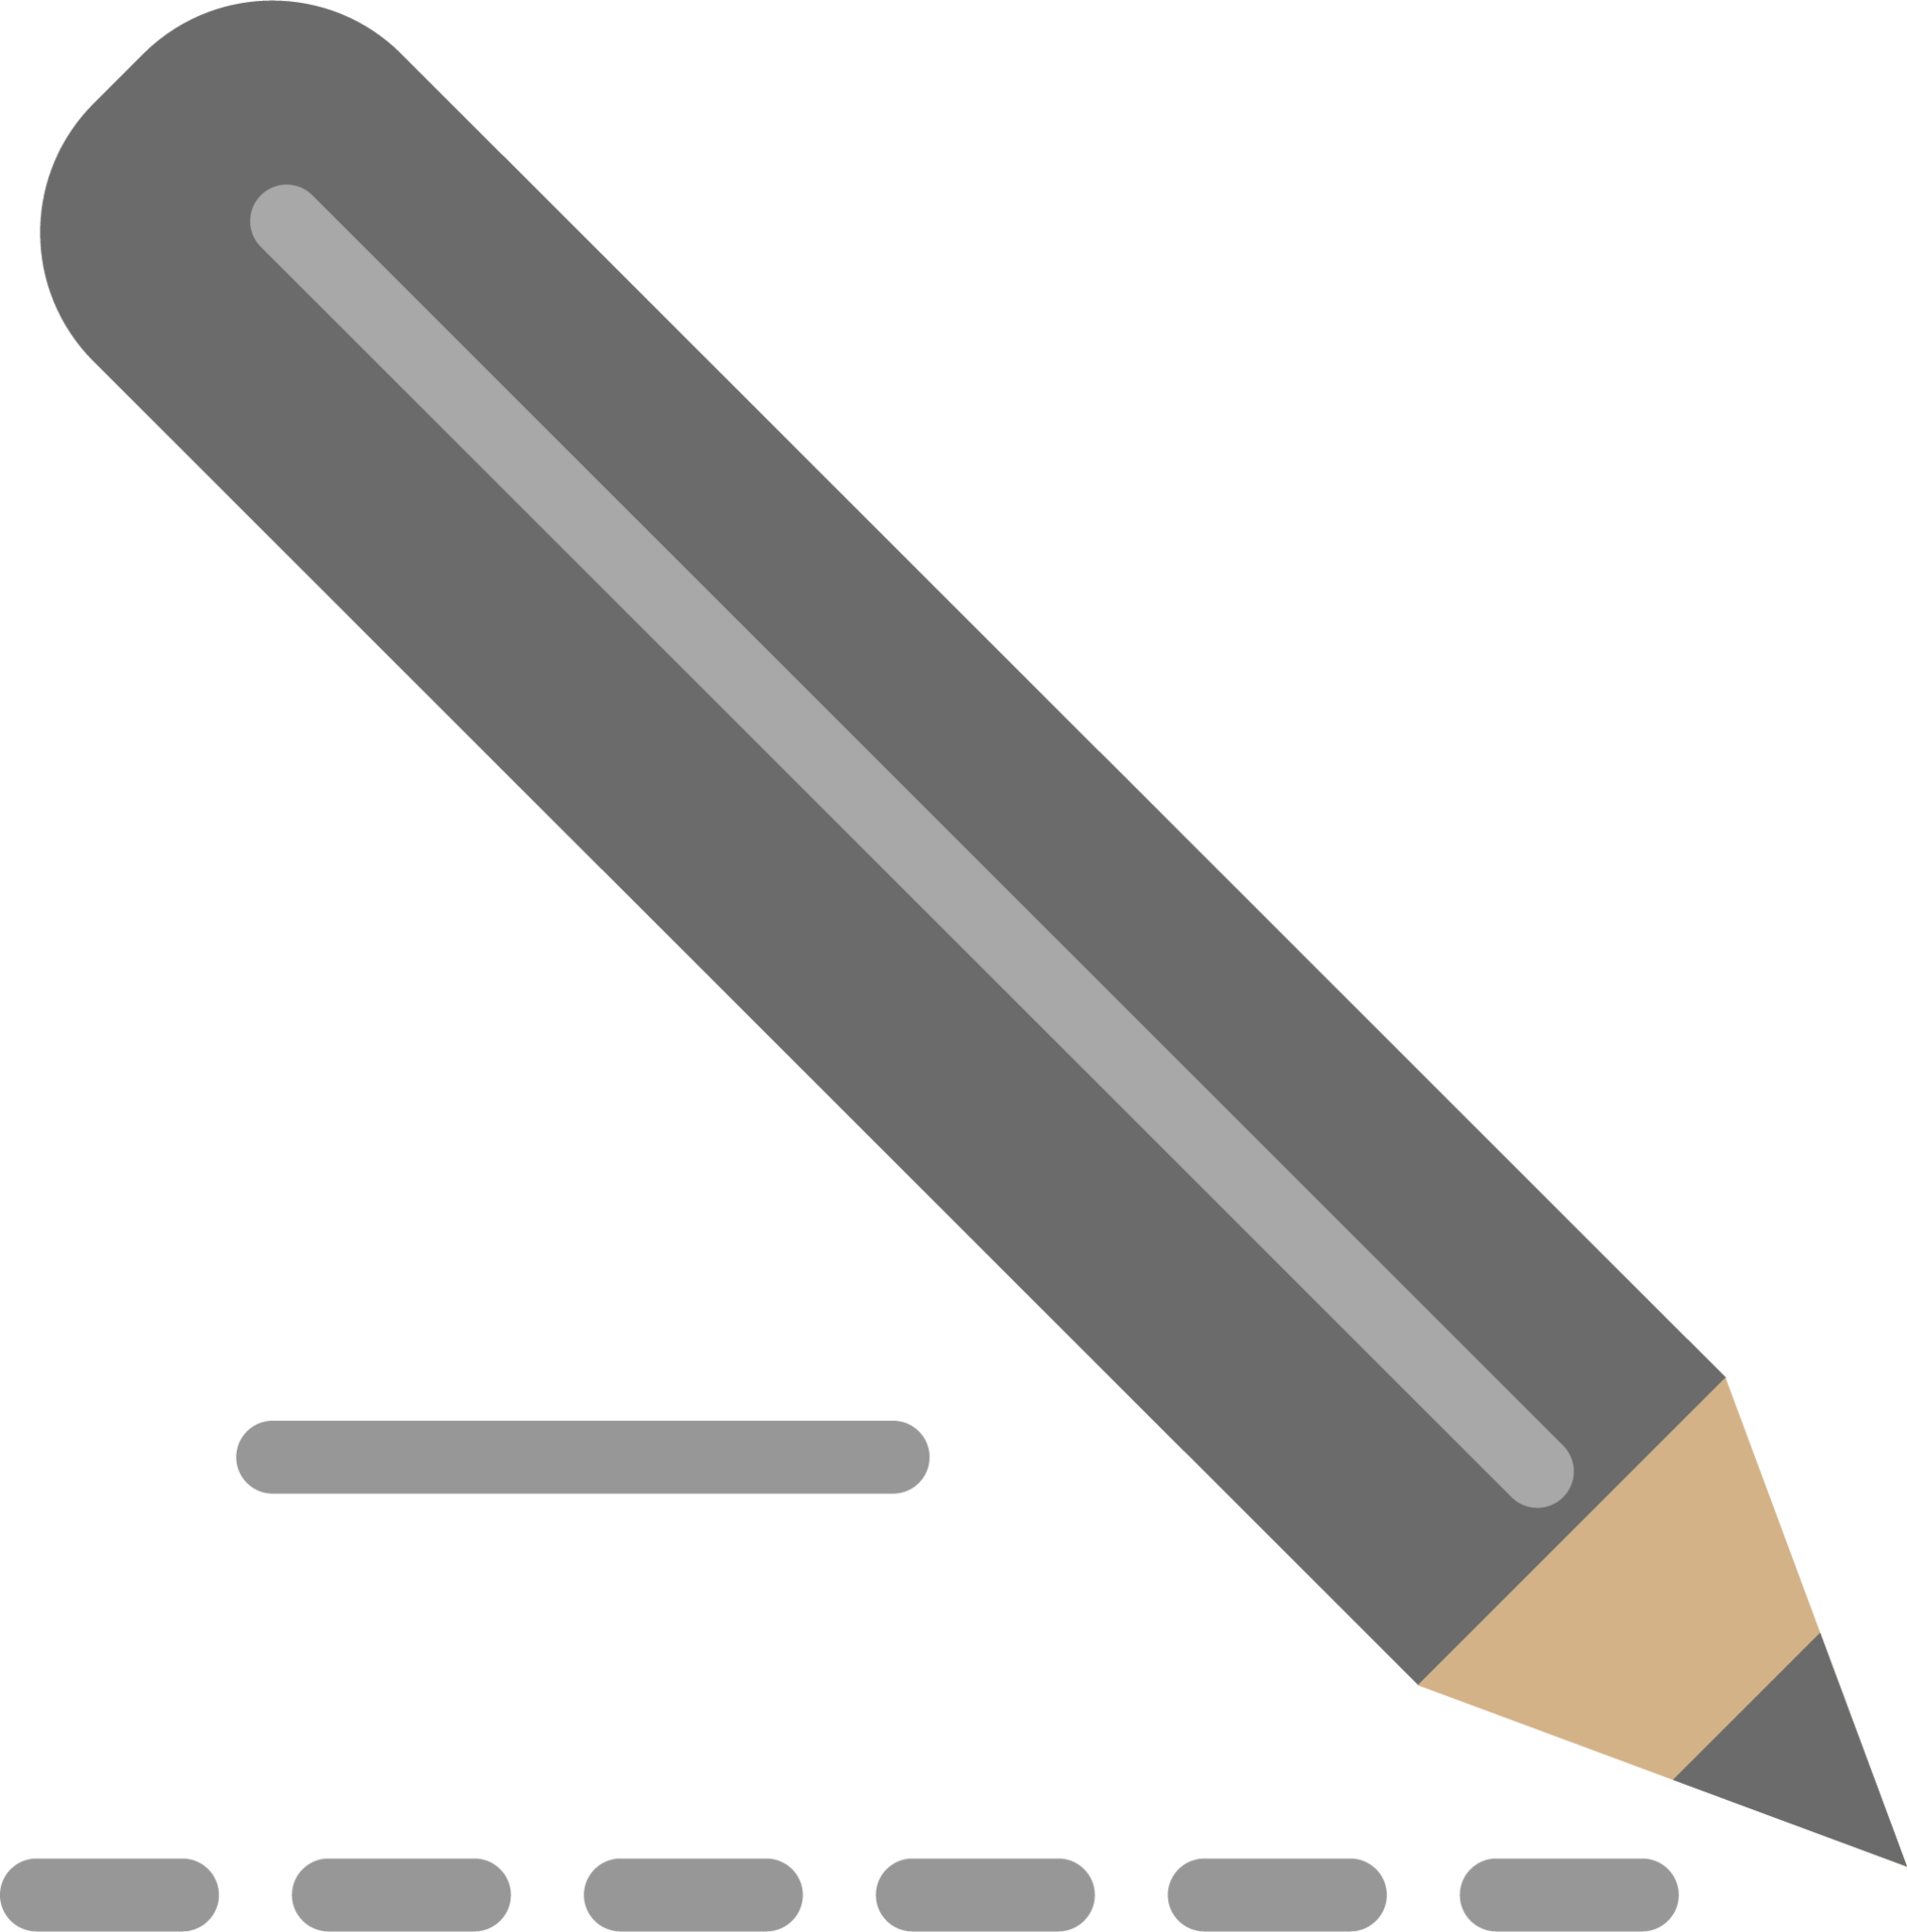 pencil write icon